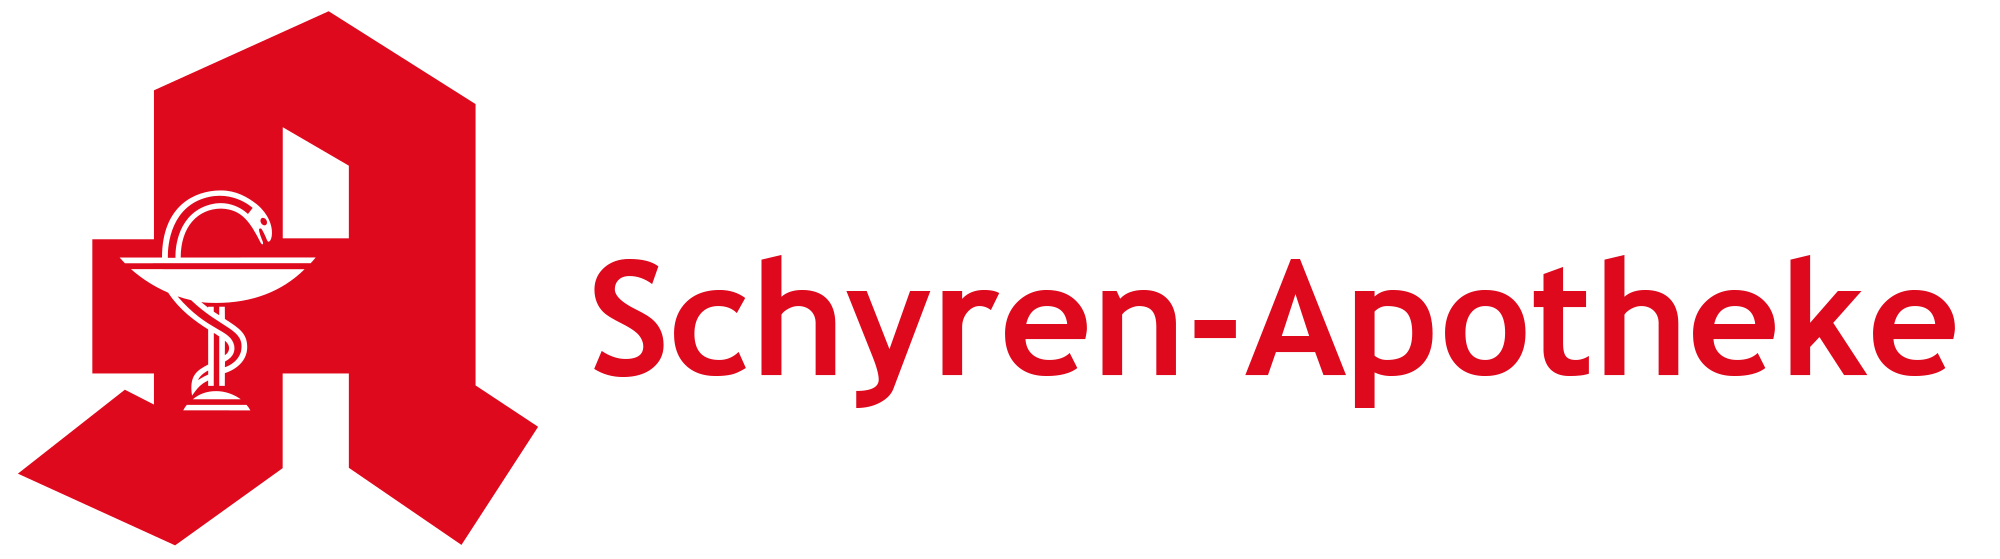 Schyren-apotheke logo